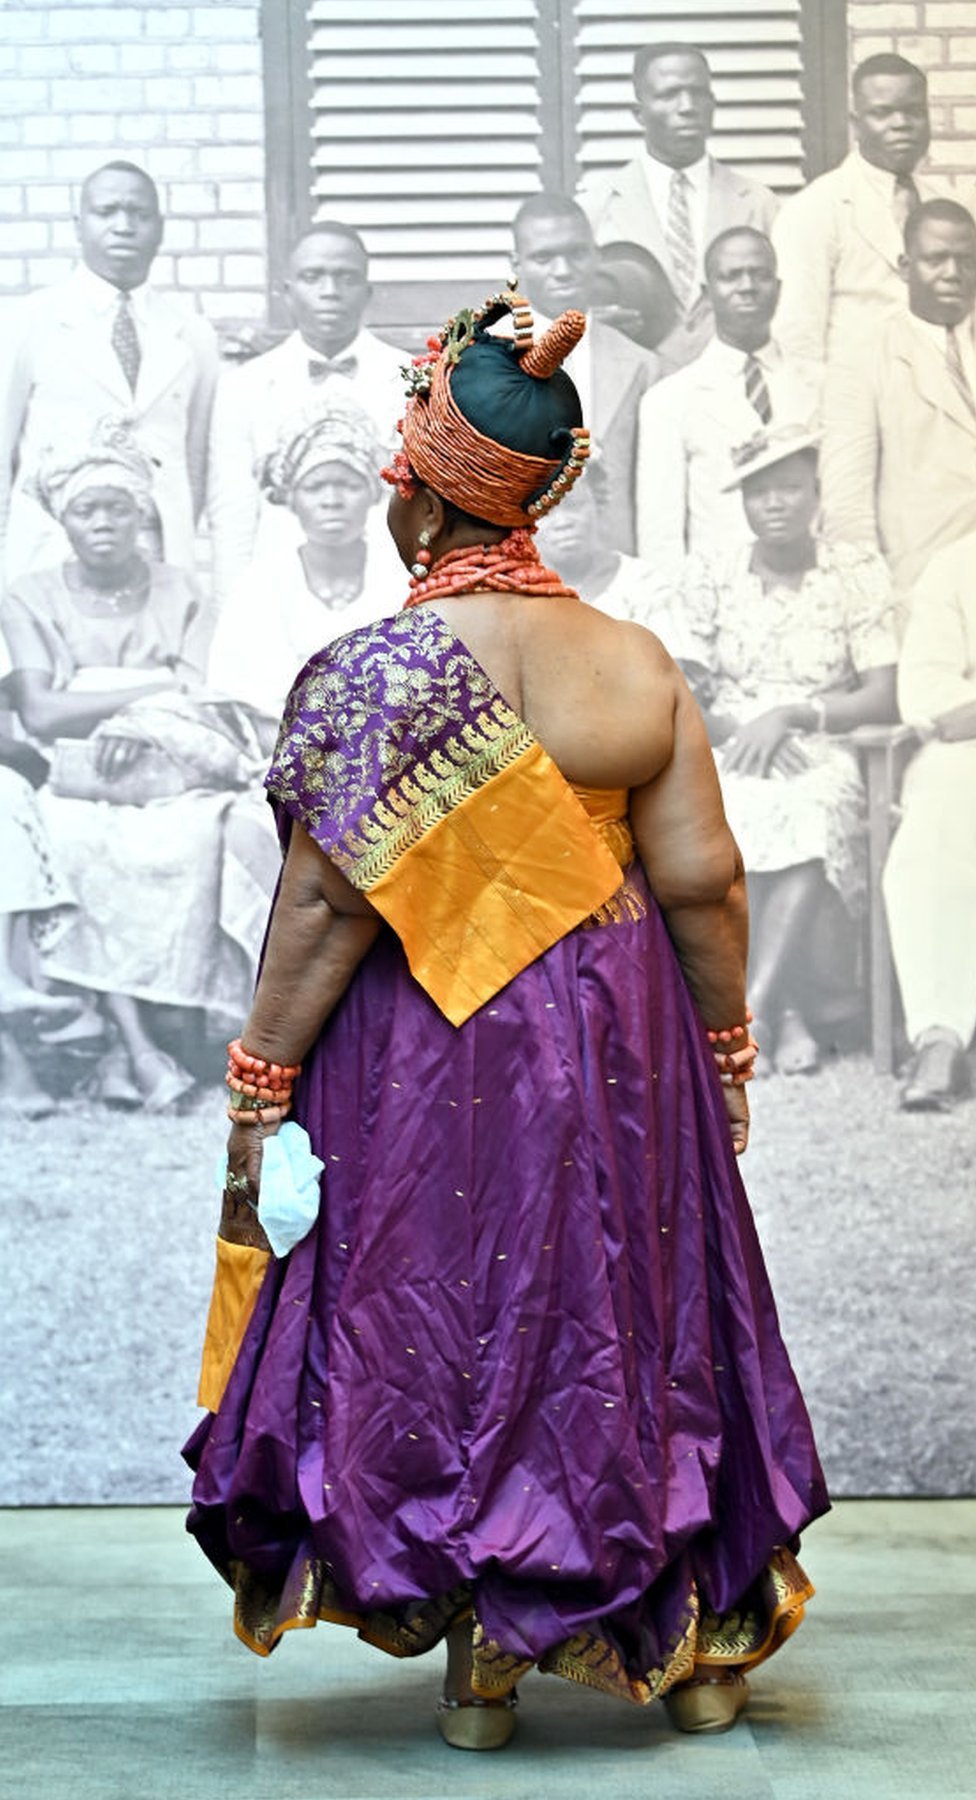 امرأة ترتدي ملابس أفريقية تقليدية تنظر إلى صورة كبيرة بالأبيض والأسود